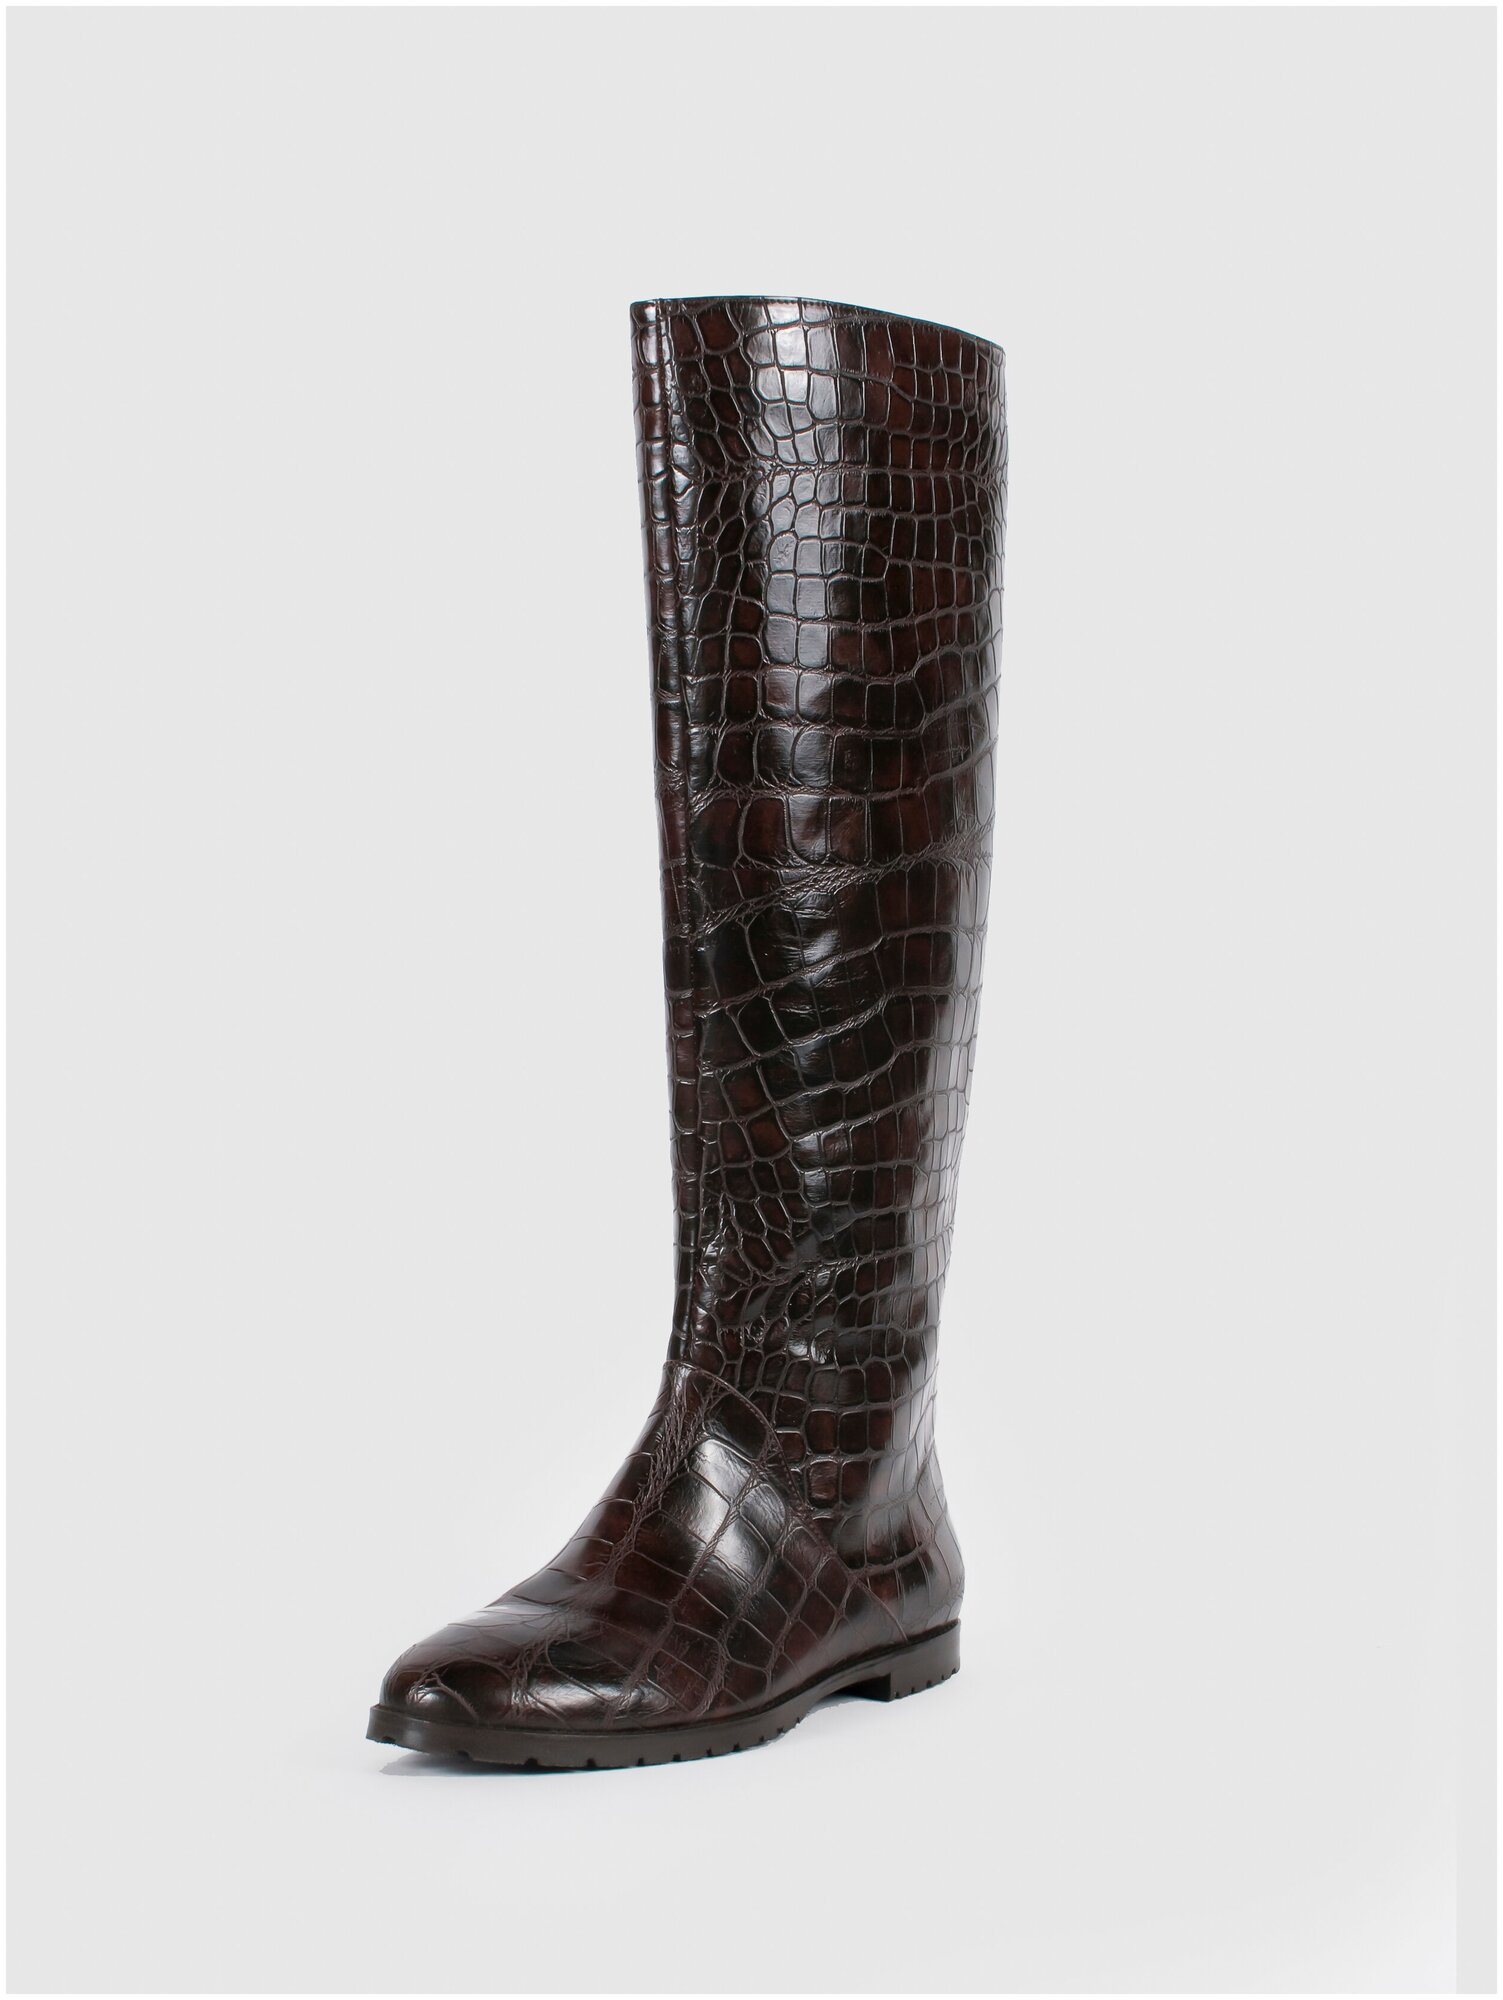 Женская обувь E-SKYE  сапоги модель Трубы натуральная кожа тисненная под крокодил цвет коричневый